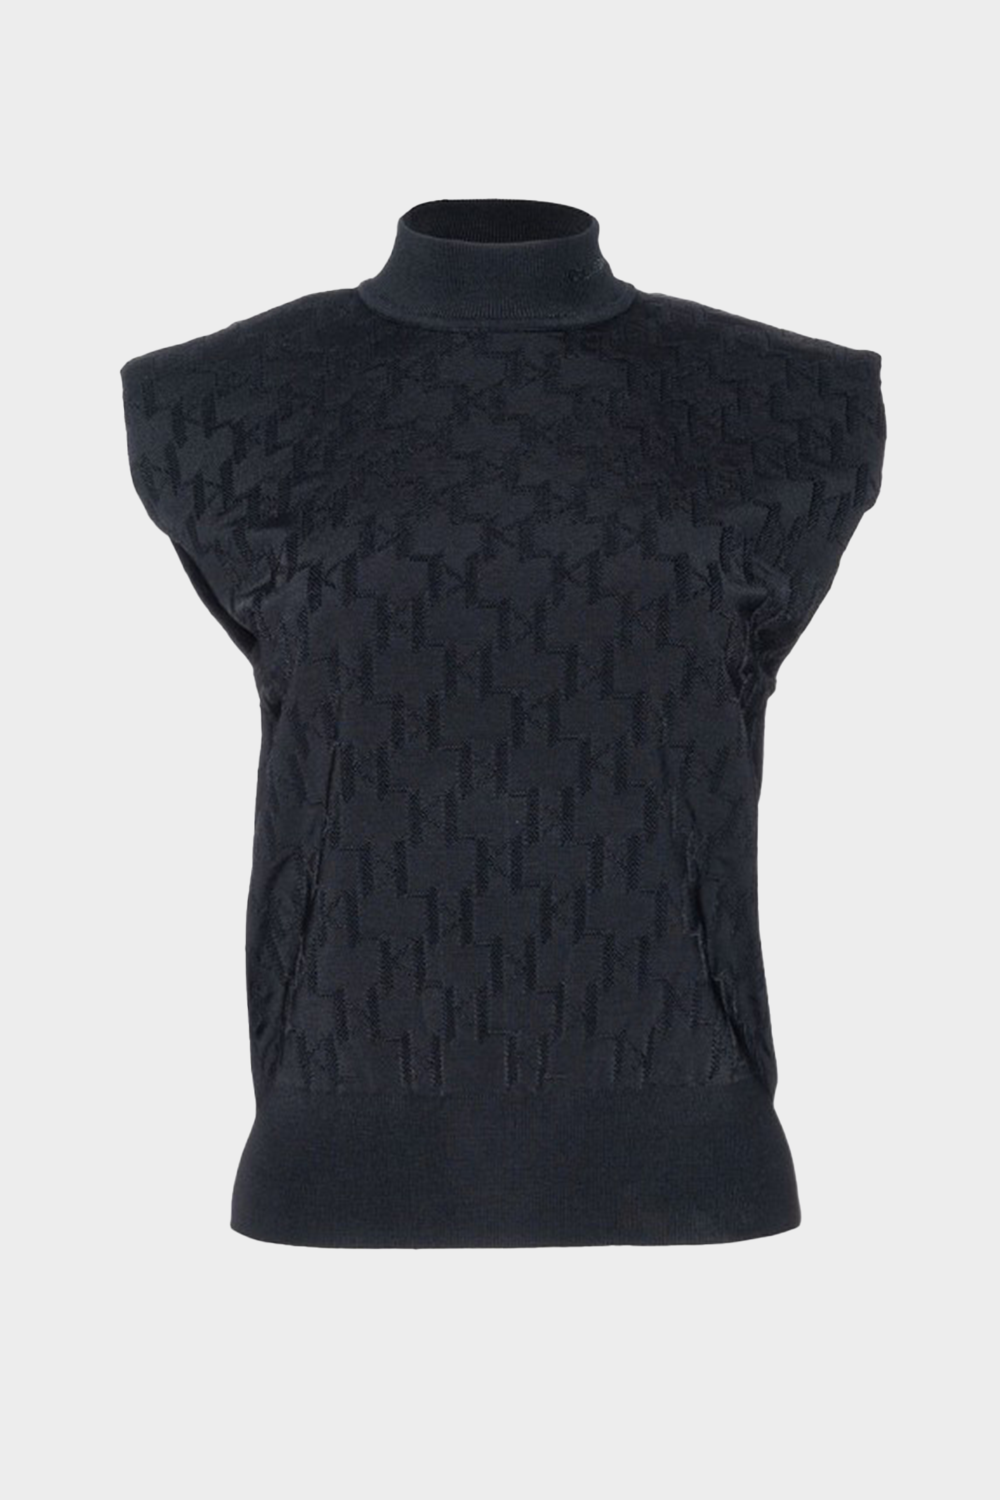 סריג צווארון לנשים בצבע אפור שחור KARL LAGERFELD Vendome online | ונדום .